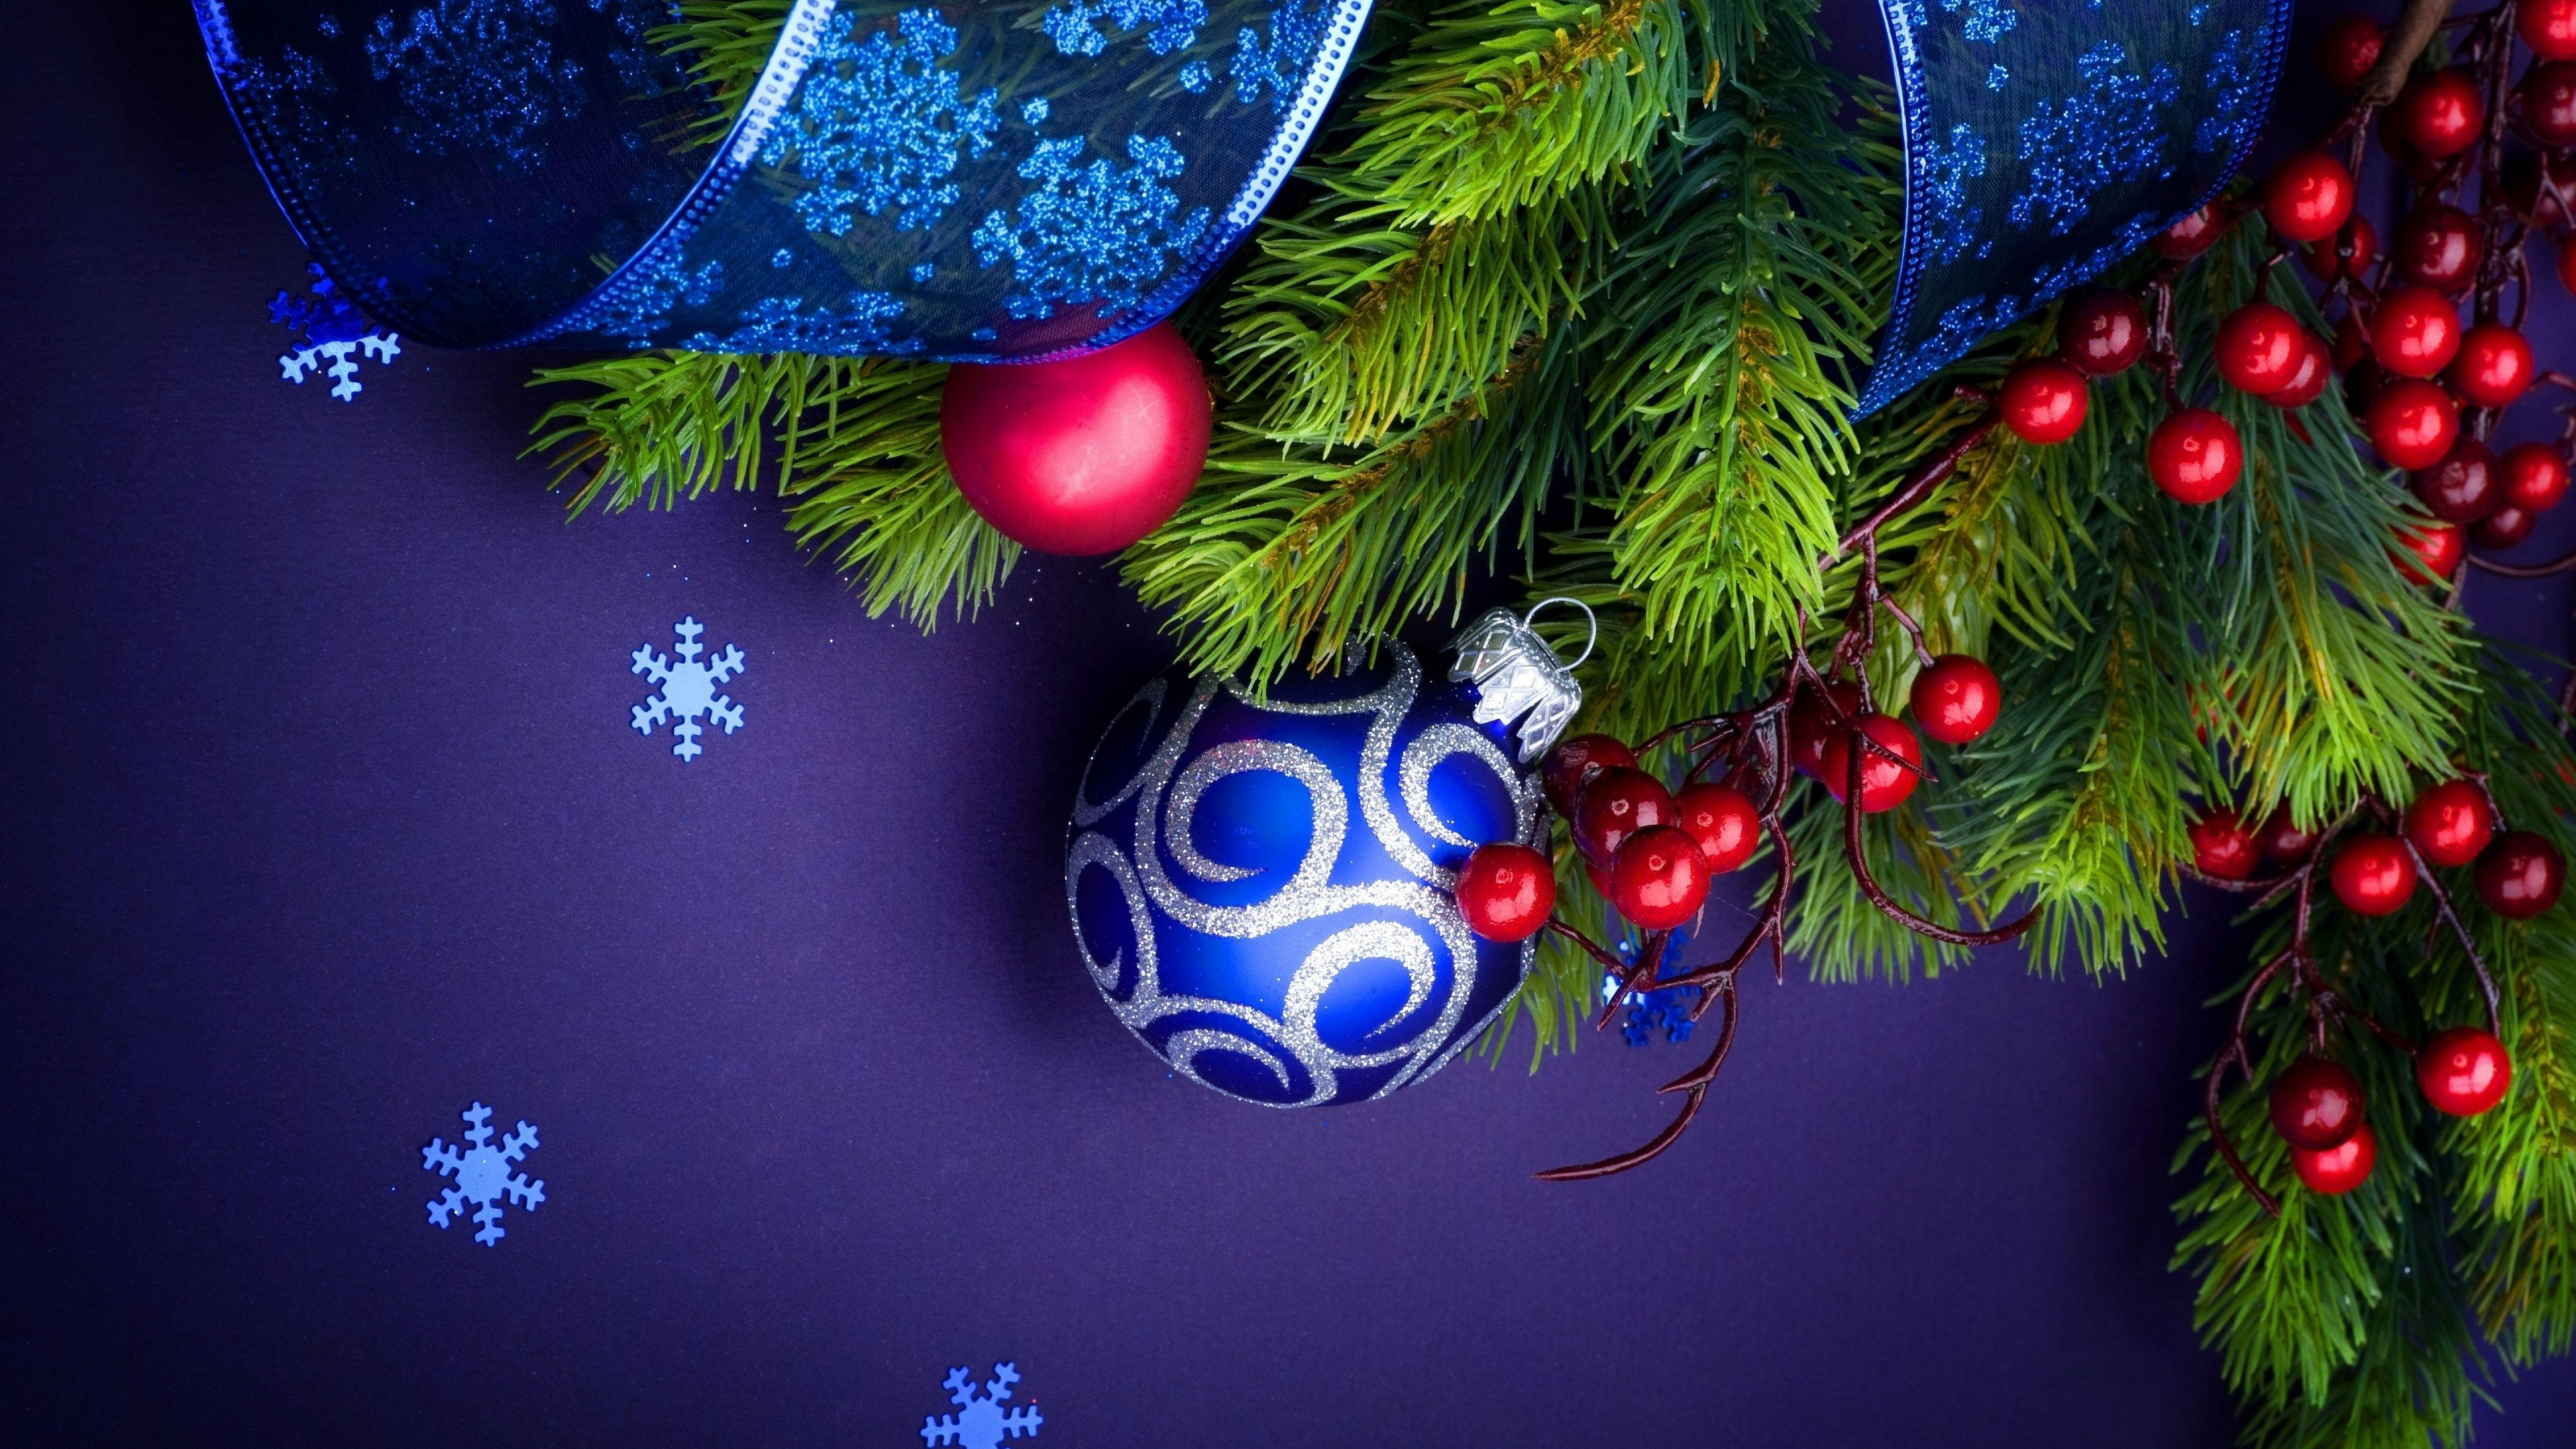 圣诞装饰, 圣诞树, Fir, 新的一年的树, 松的家庭 壁纸 3840x2160 允许